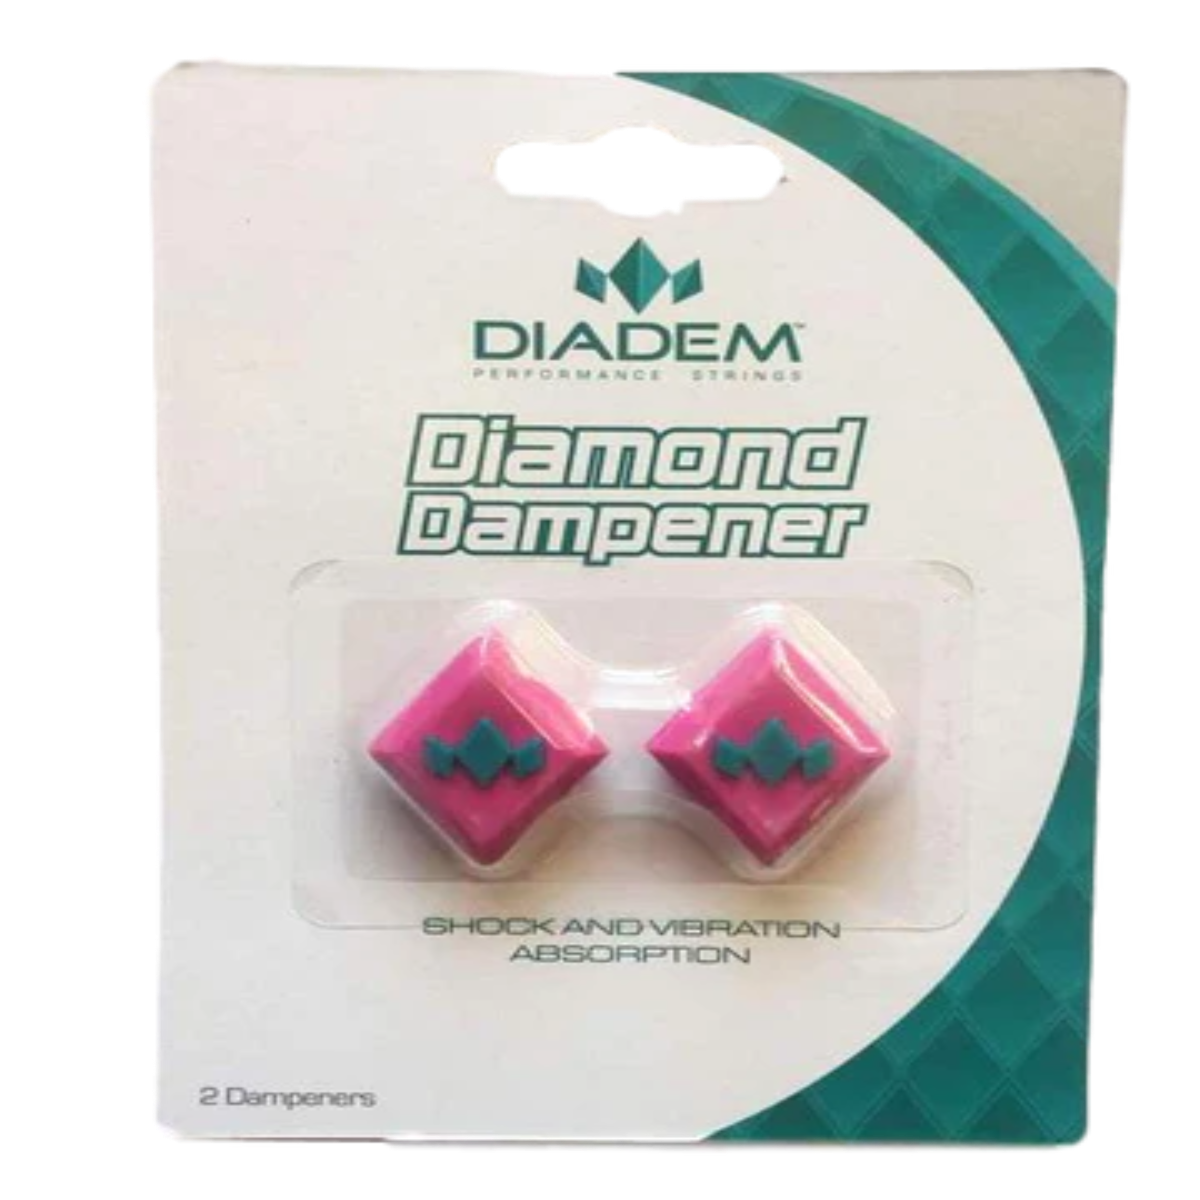 DIADEM DIAMOND DAMPENER 2-PACK